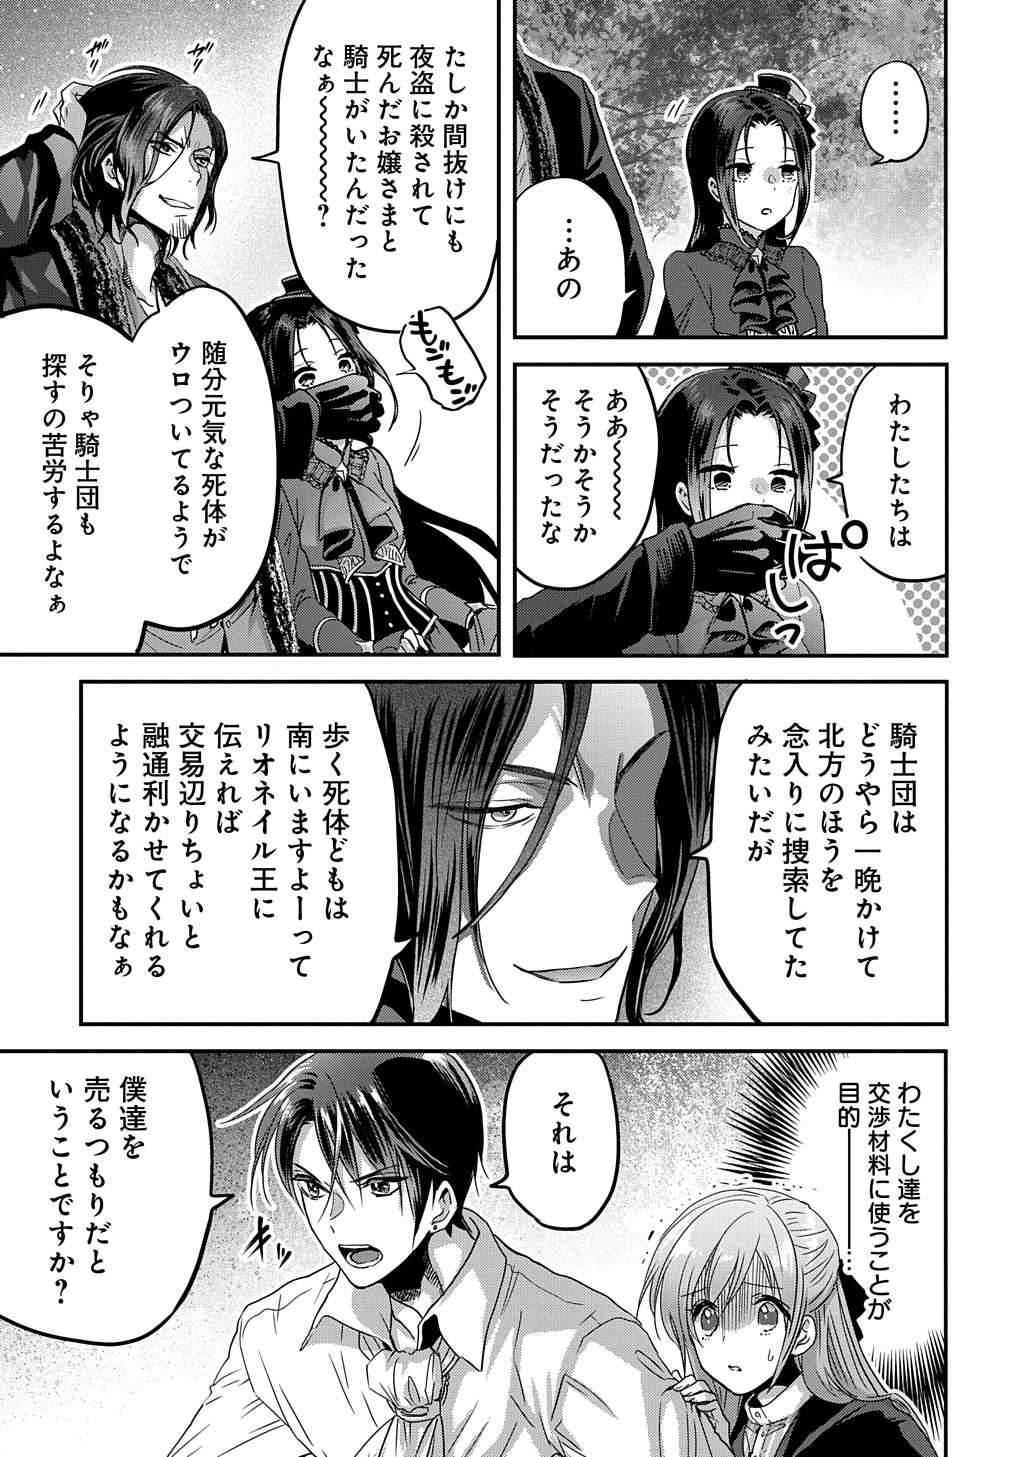 Konyakusha no Uwaki Genba wo Michatta no de Hajimari no Kane ga narimashita - Chapter 8 - Page 7